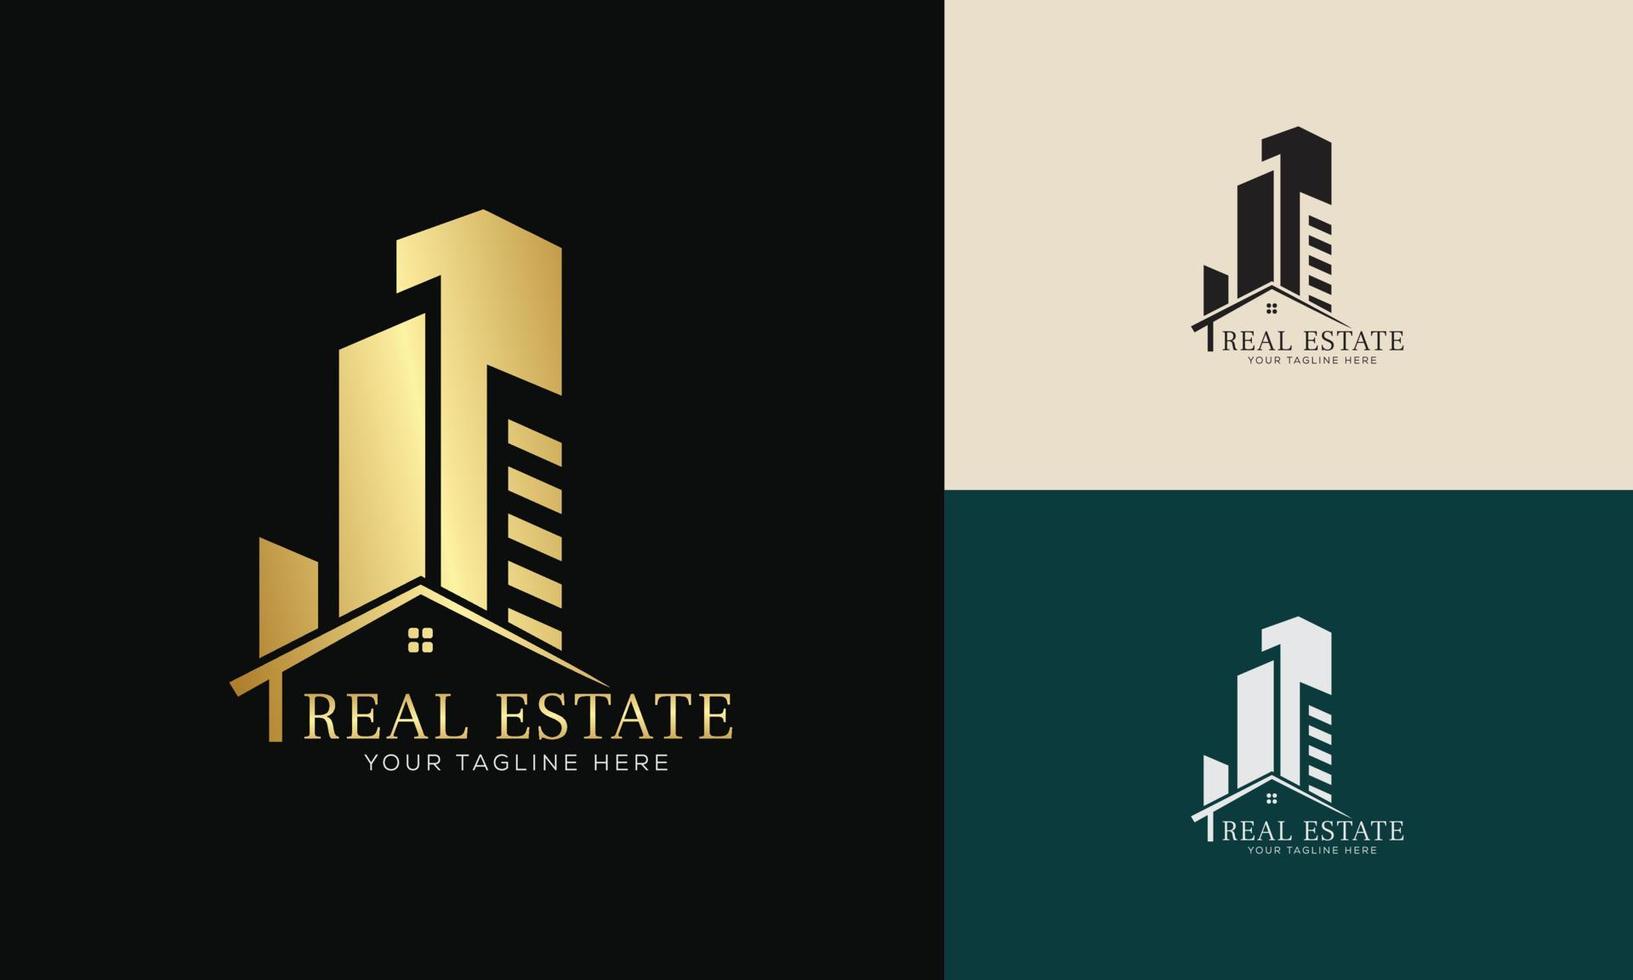 modèle de logo immobilier avec badges premium de style créatif doré pour le logo de l'agent immobilier vendu vecteur